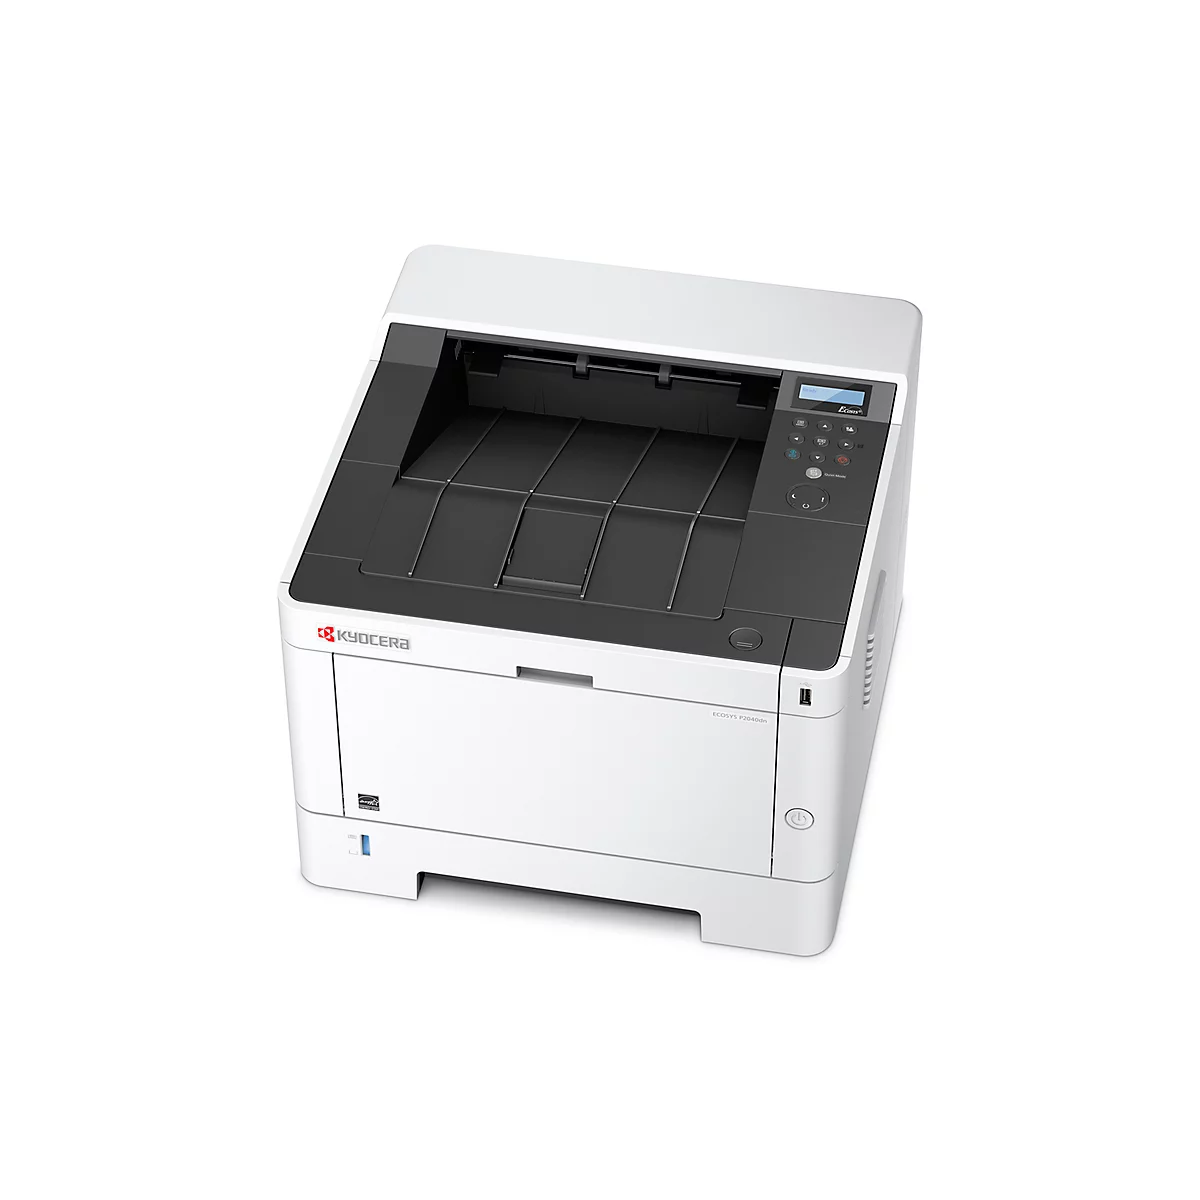 Kyocera Laserdrucker ECOSYS P2040dn, S/W-Drucker, 40 Seiten/Min., USB 2.0 und LAN